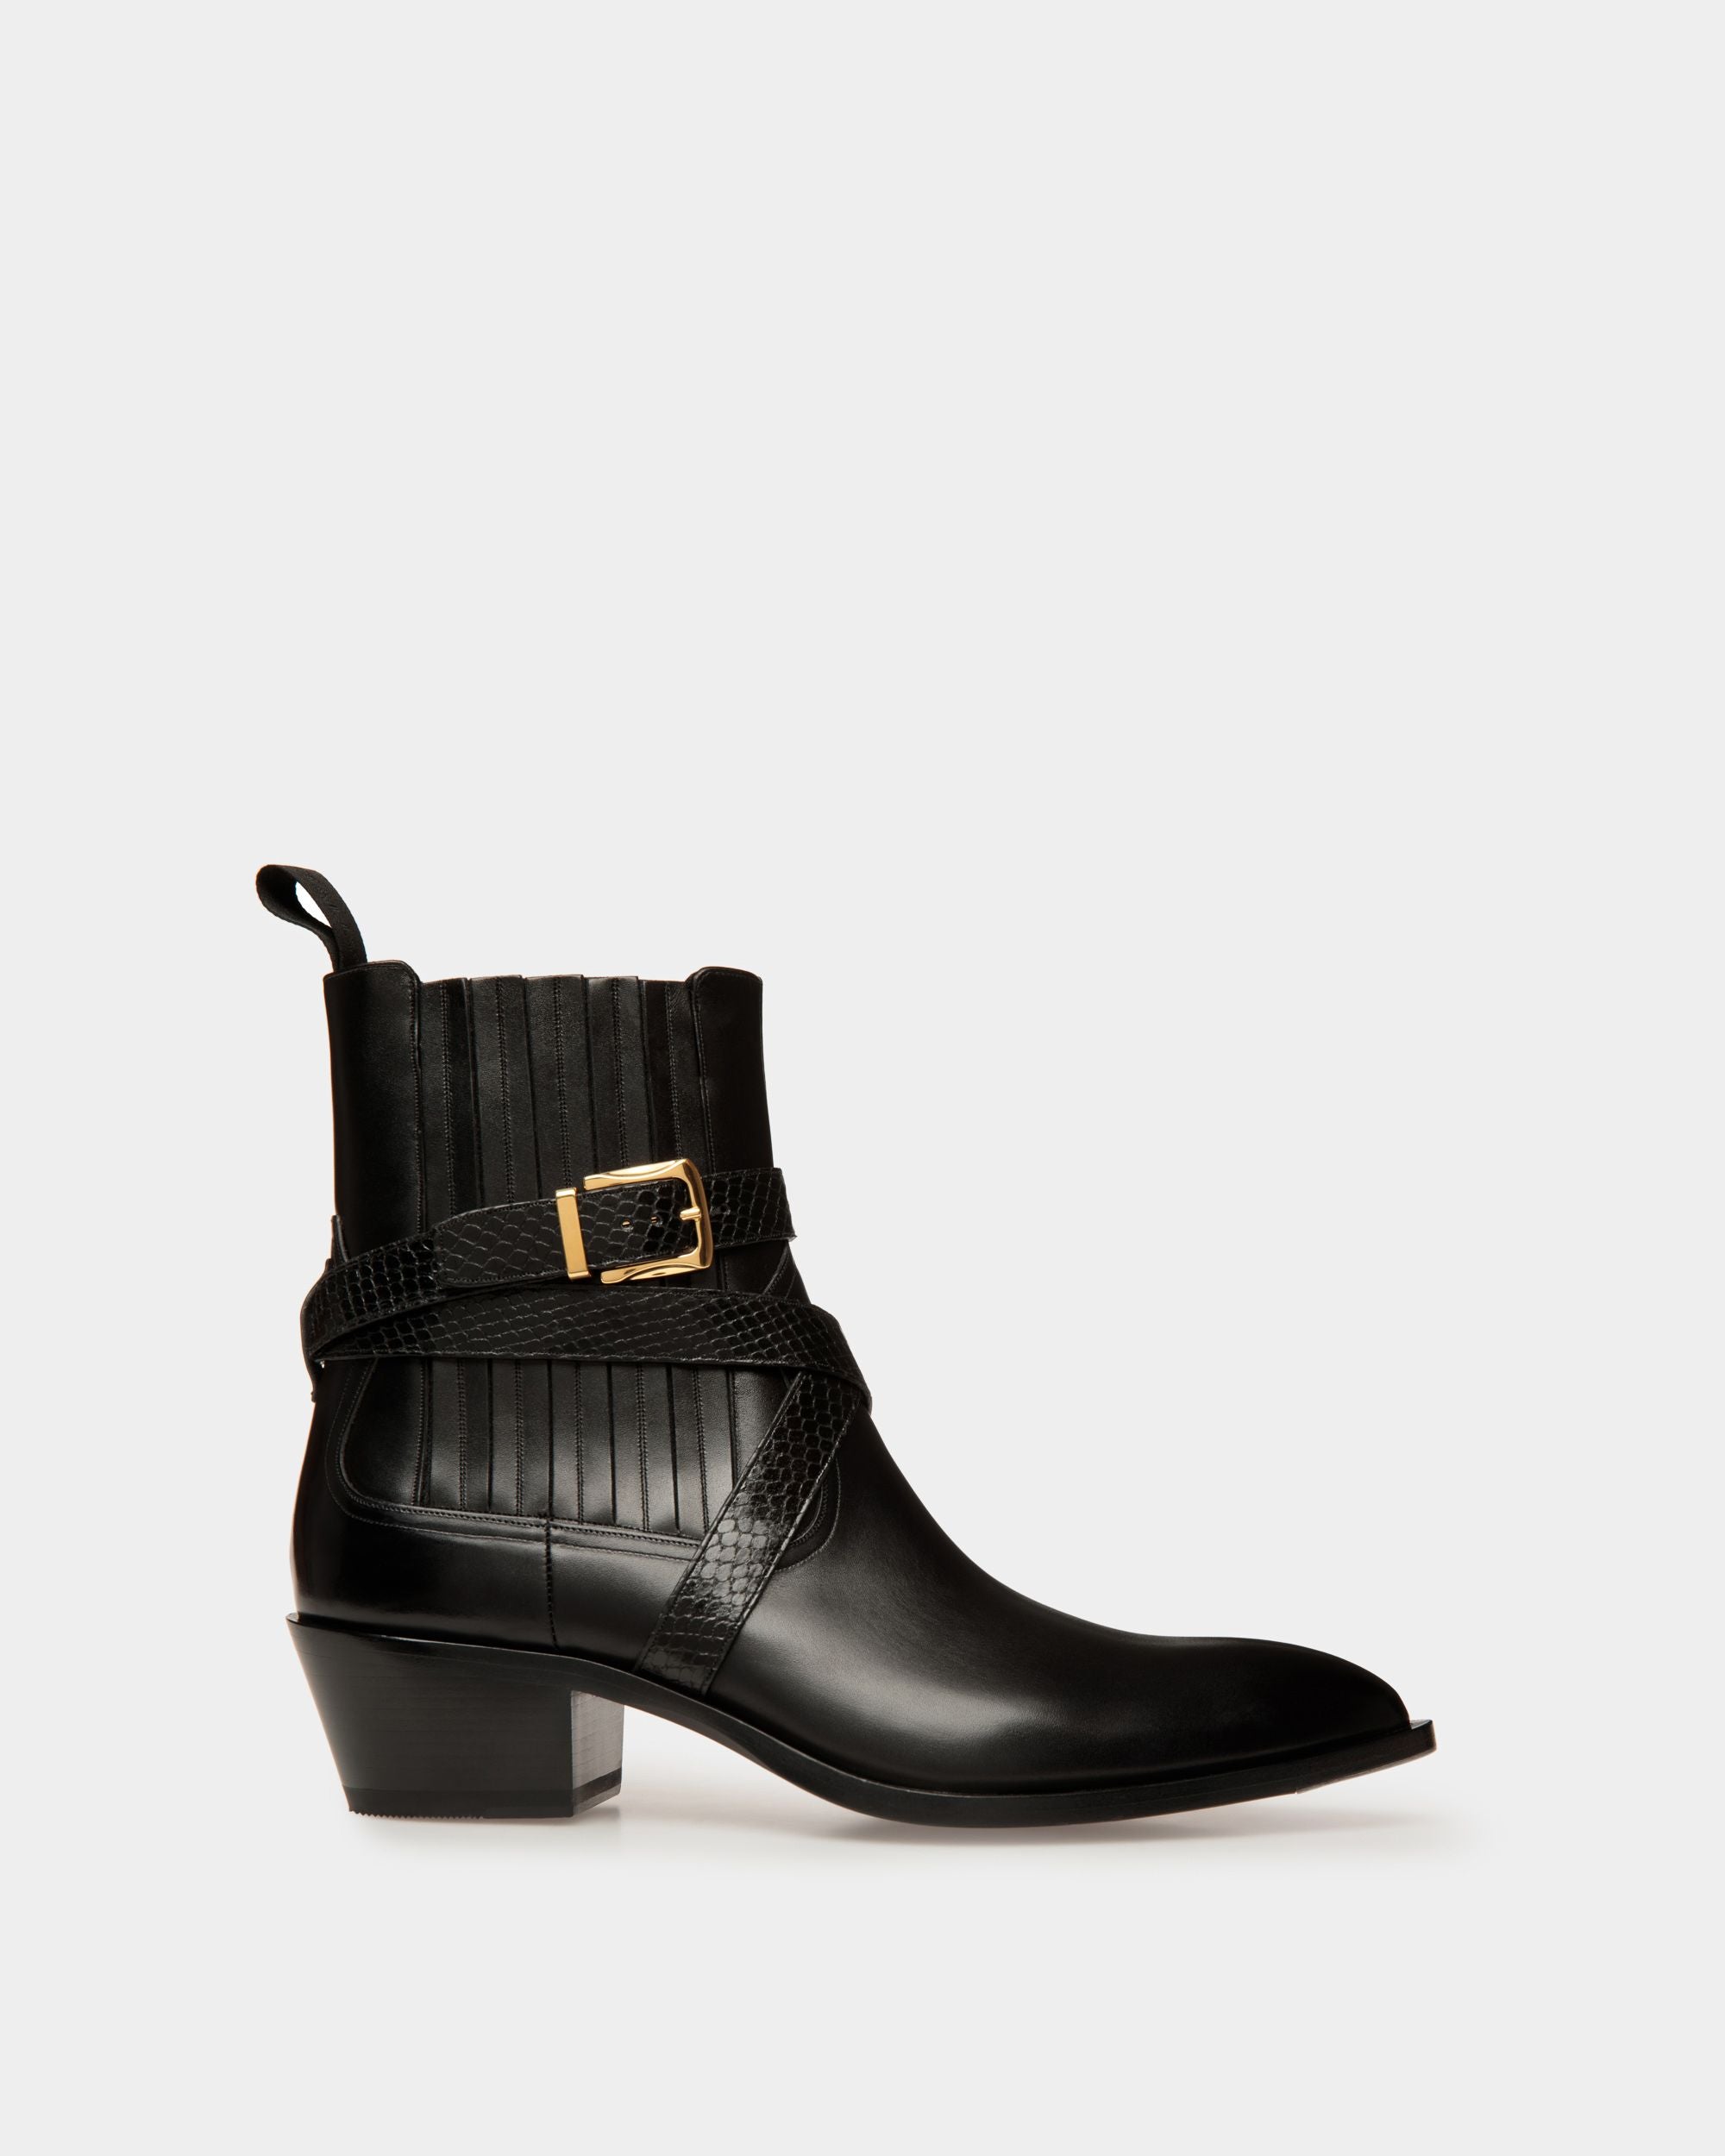 Varen | Men's Boots | Black Leather | Bally | Still Life Side